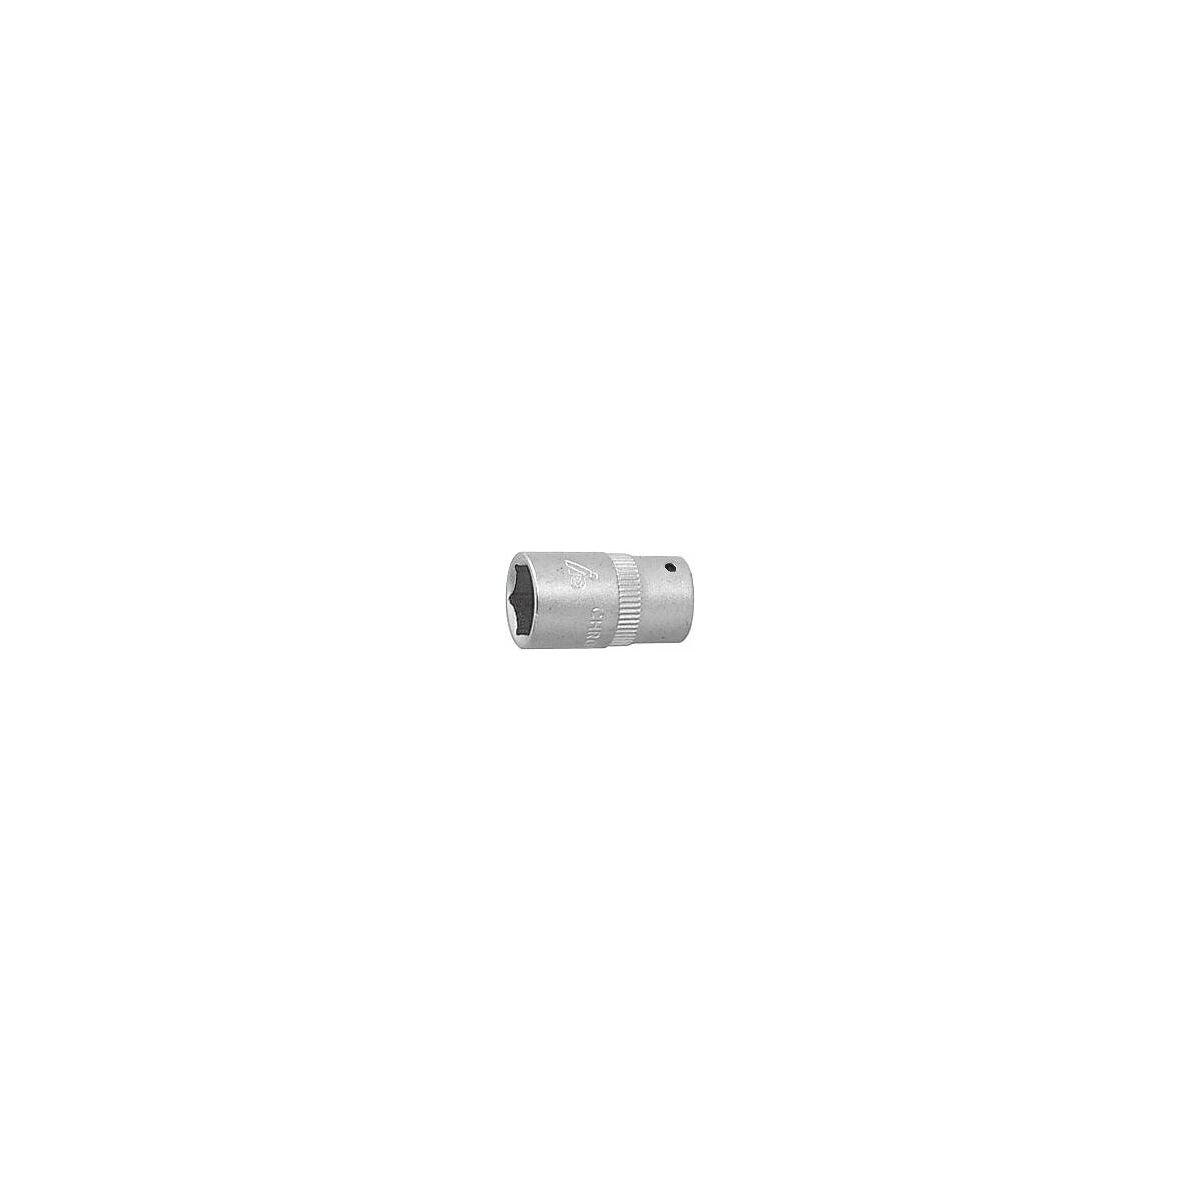 Đầu Khẩu Lục Giác 1/4 Inch Holex 5mm - Hàng Chính Hãng 100% từ Đức